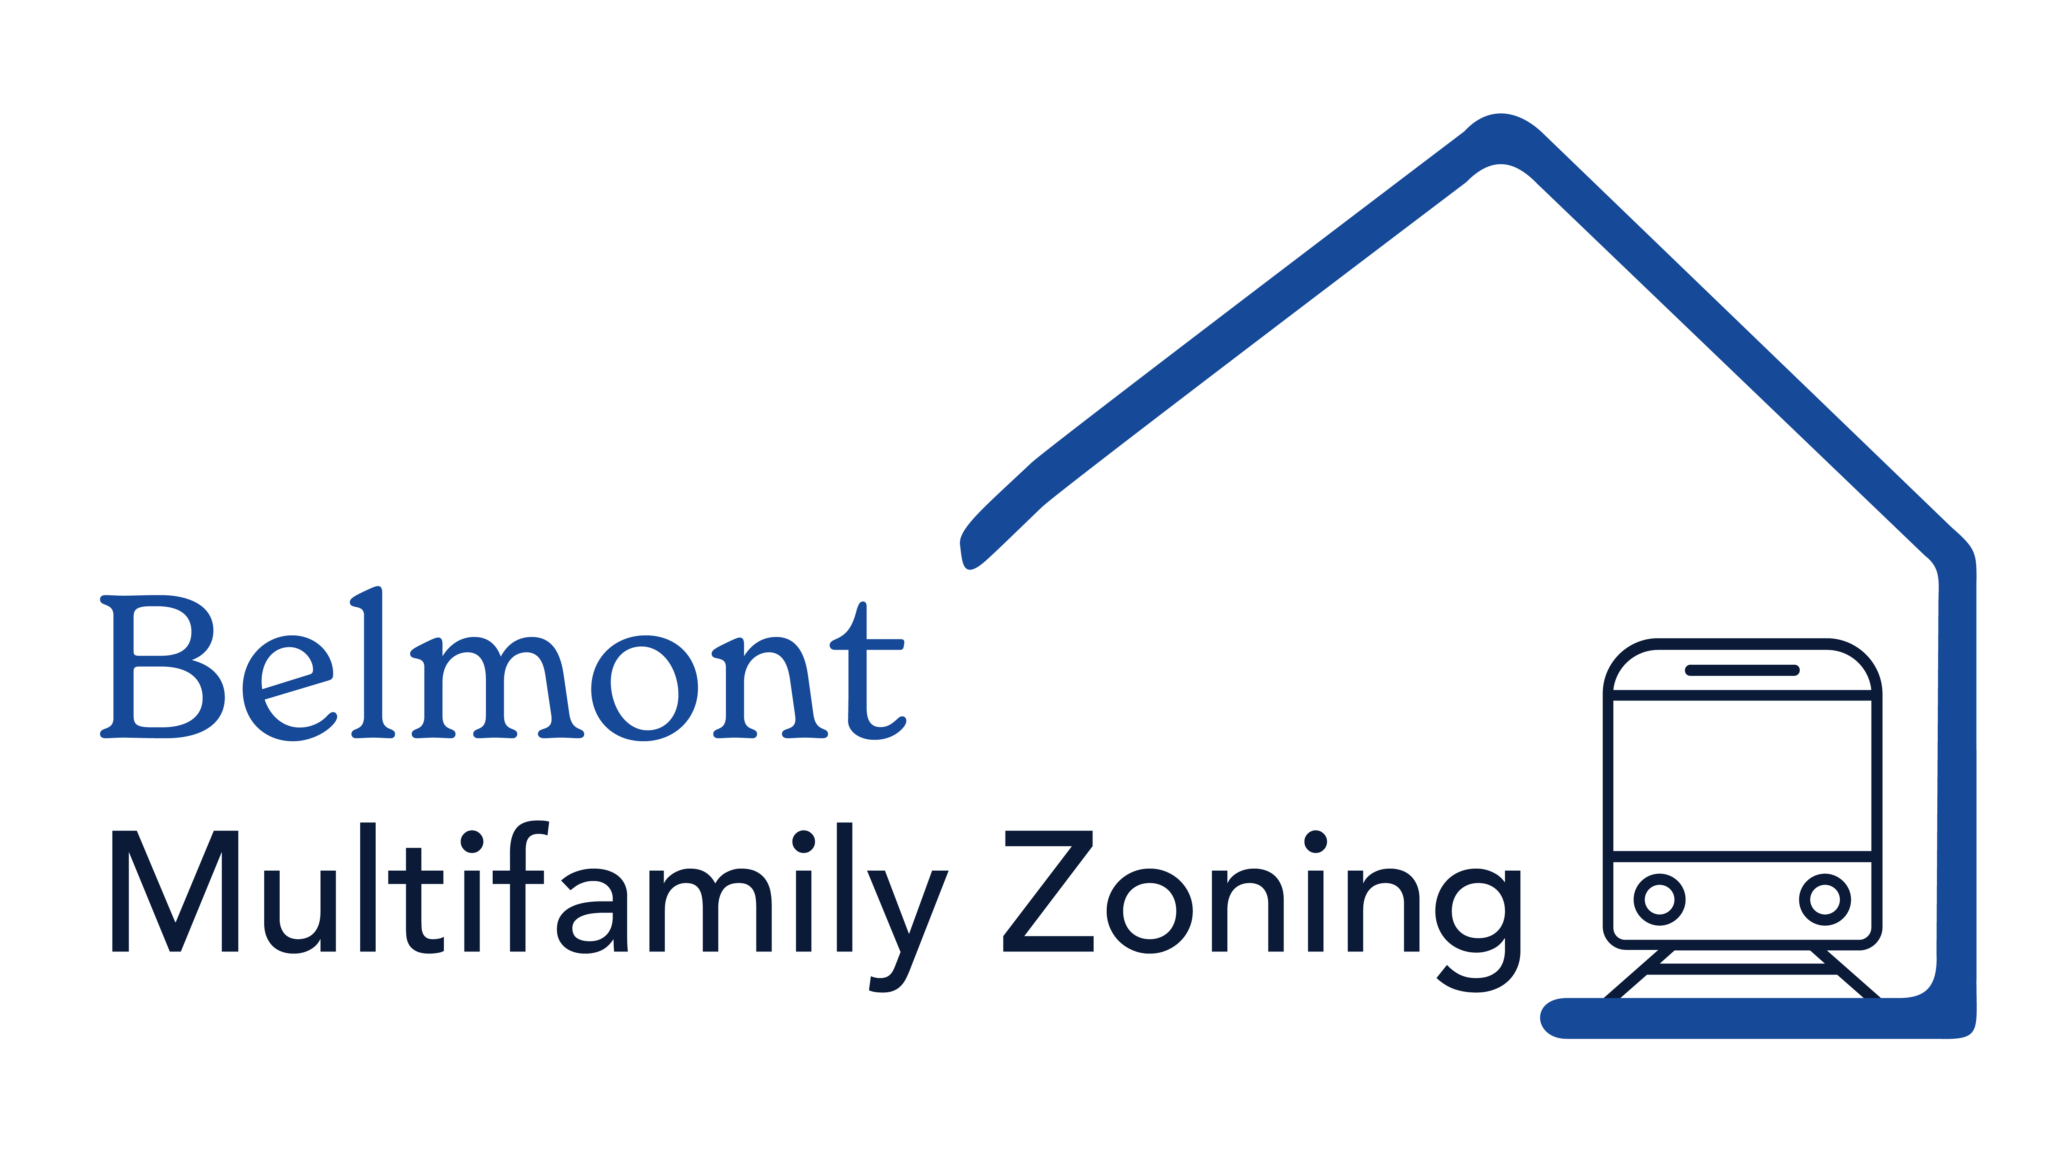 Belmont Multifamily Zoning Public Forum (Hybrid Format) @ Beech Street Center | Belmont | Massachusetts | United States